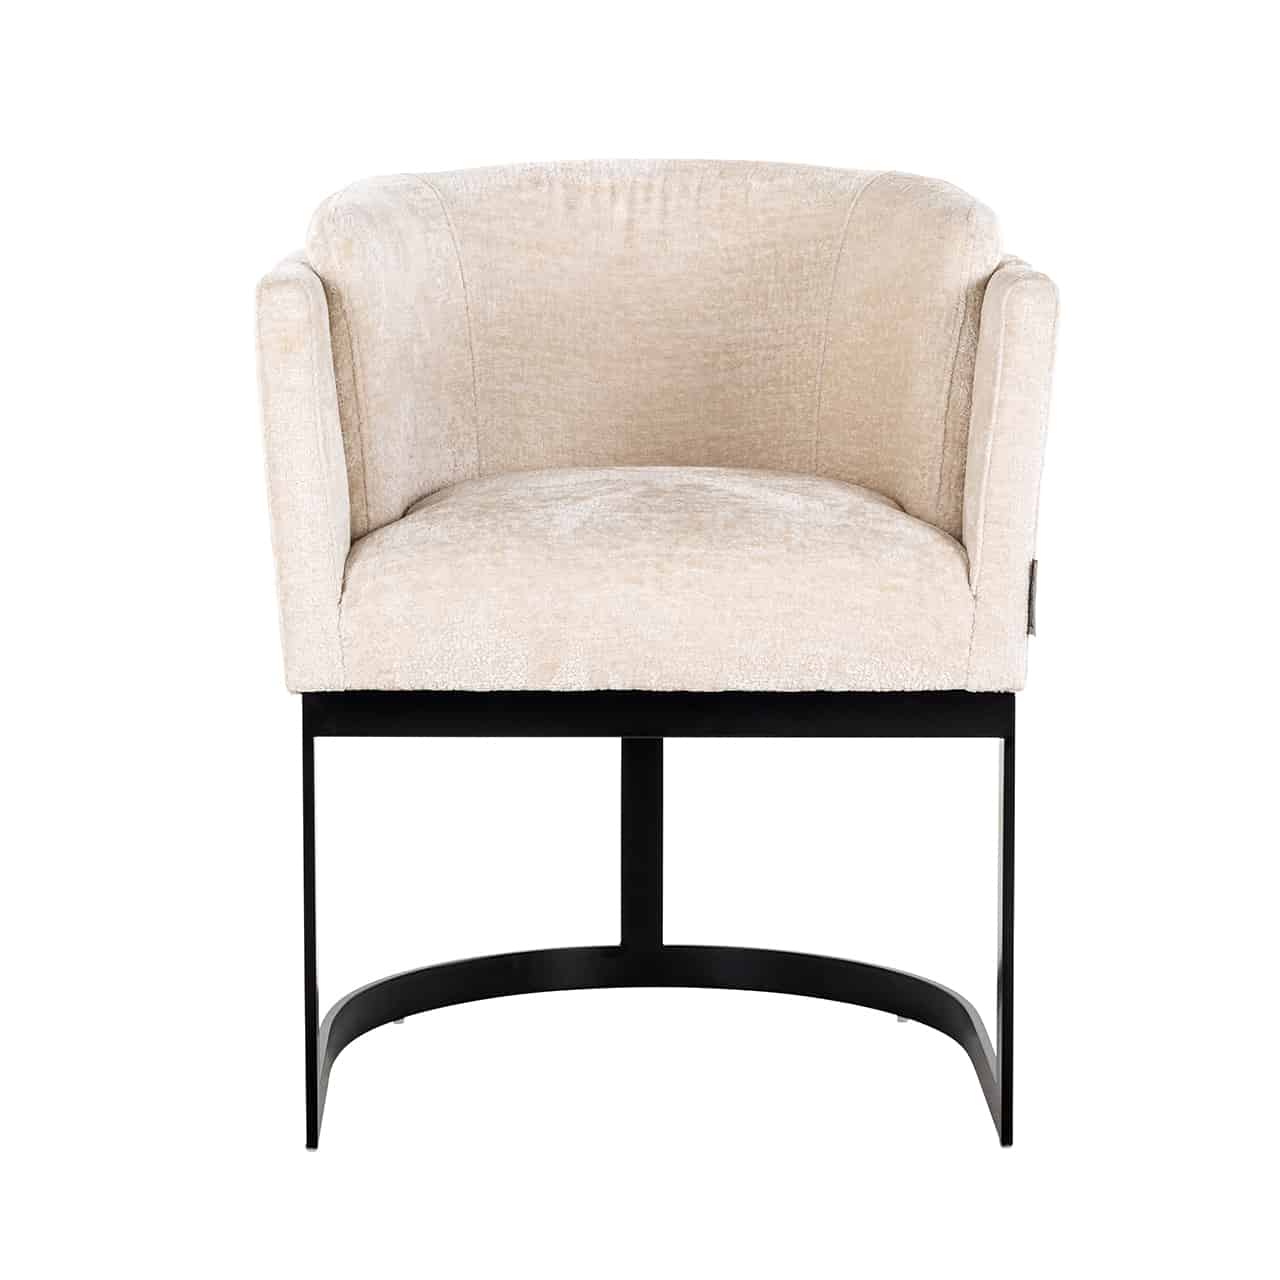 Vollpolsterstuhl mit einem Bezug aus weißem Chenille; auf einem runden, vorne offenen Gestell aus breiten, schwarzen Stahlstreben ist eine dick gepolsterte Sitzschale mit umlaufender Lehne angebracht. 